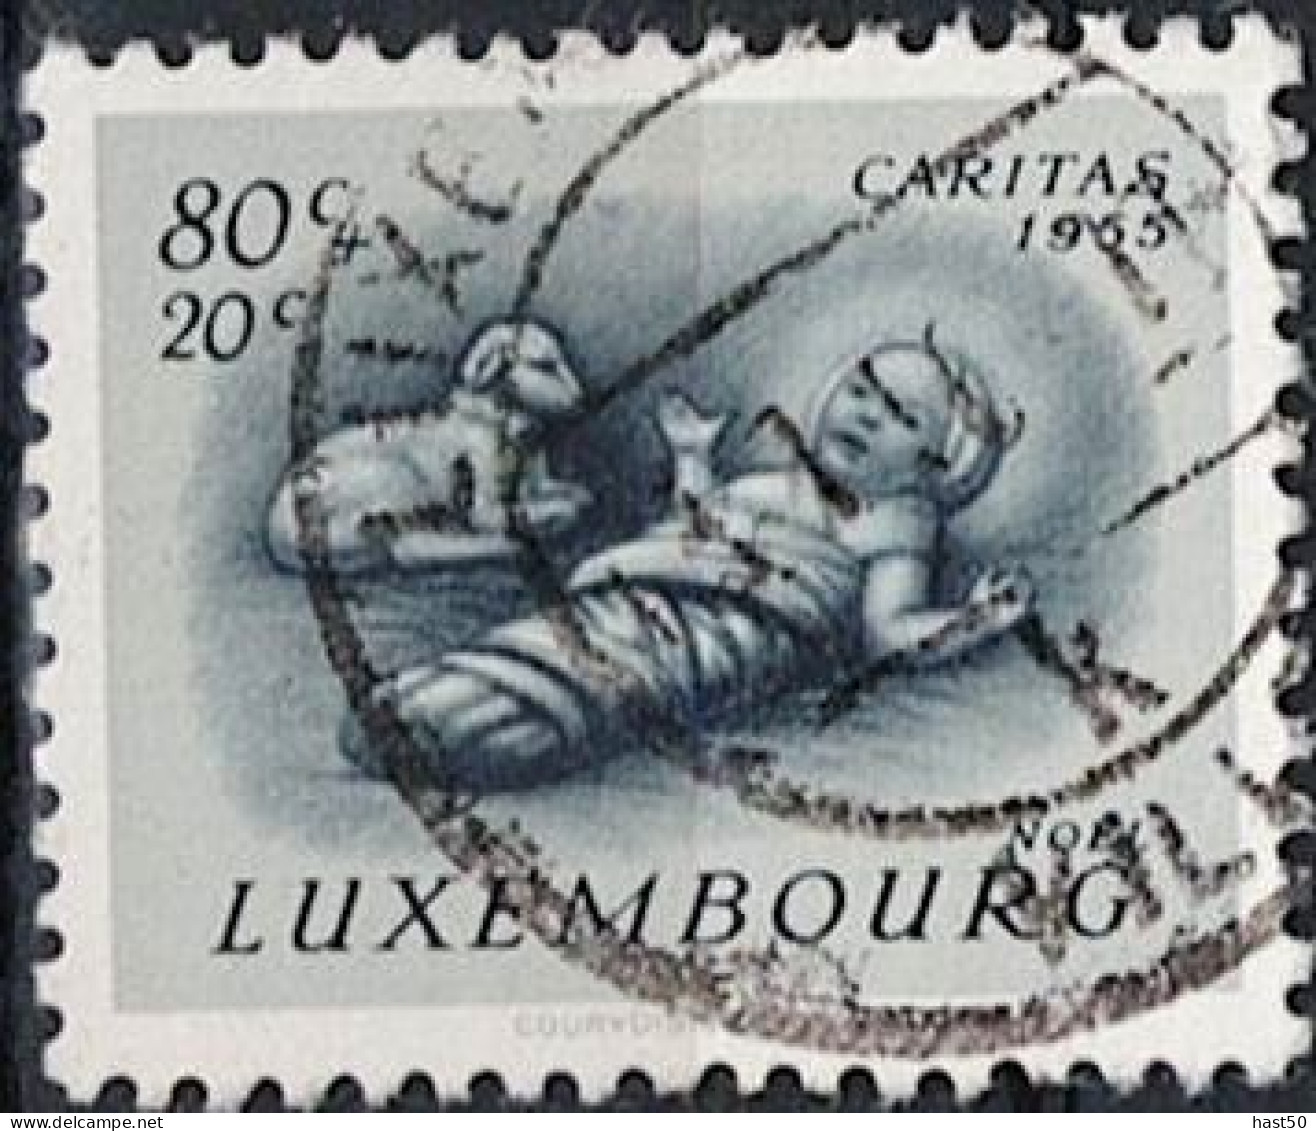 Luxemburg - Caritas: Brauchtum (MiNr: 542) 1955 - Gest Used Obl - Usati